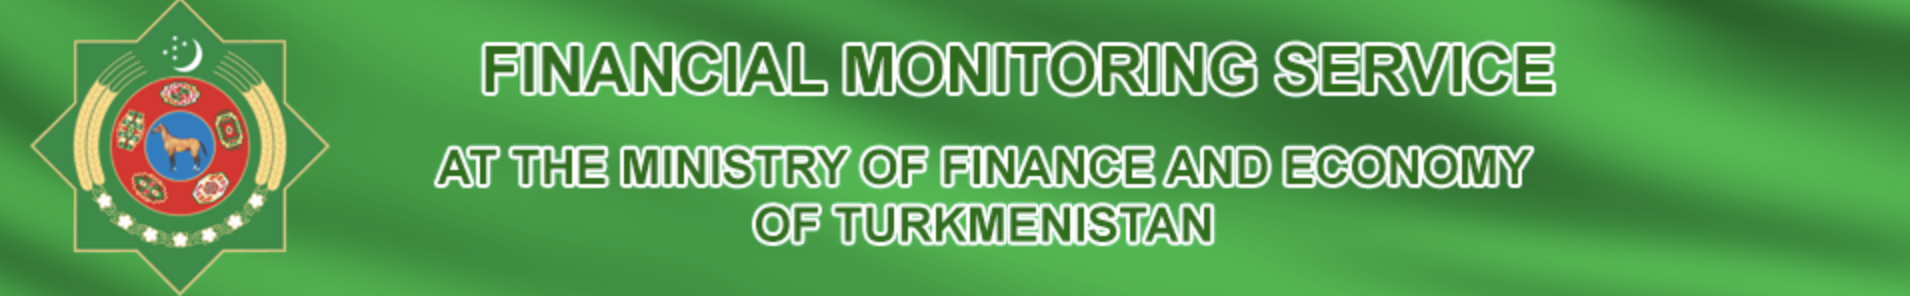 Ministry of Finance turkmenistan logo